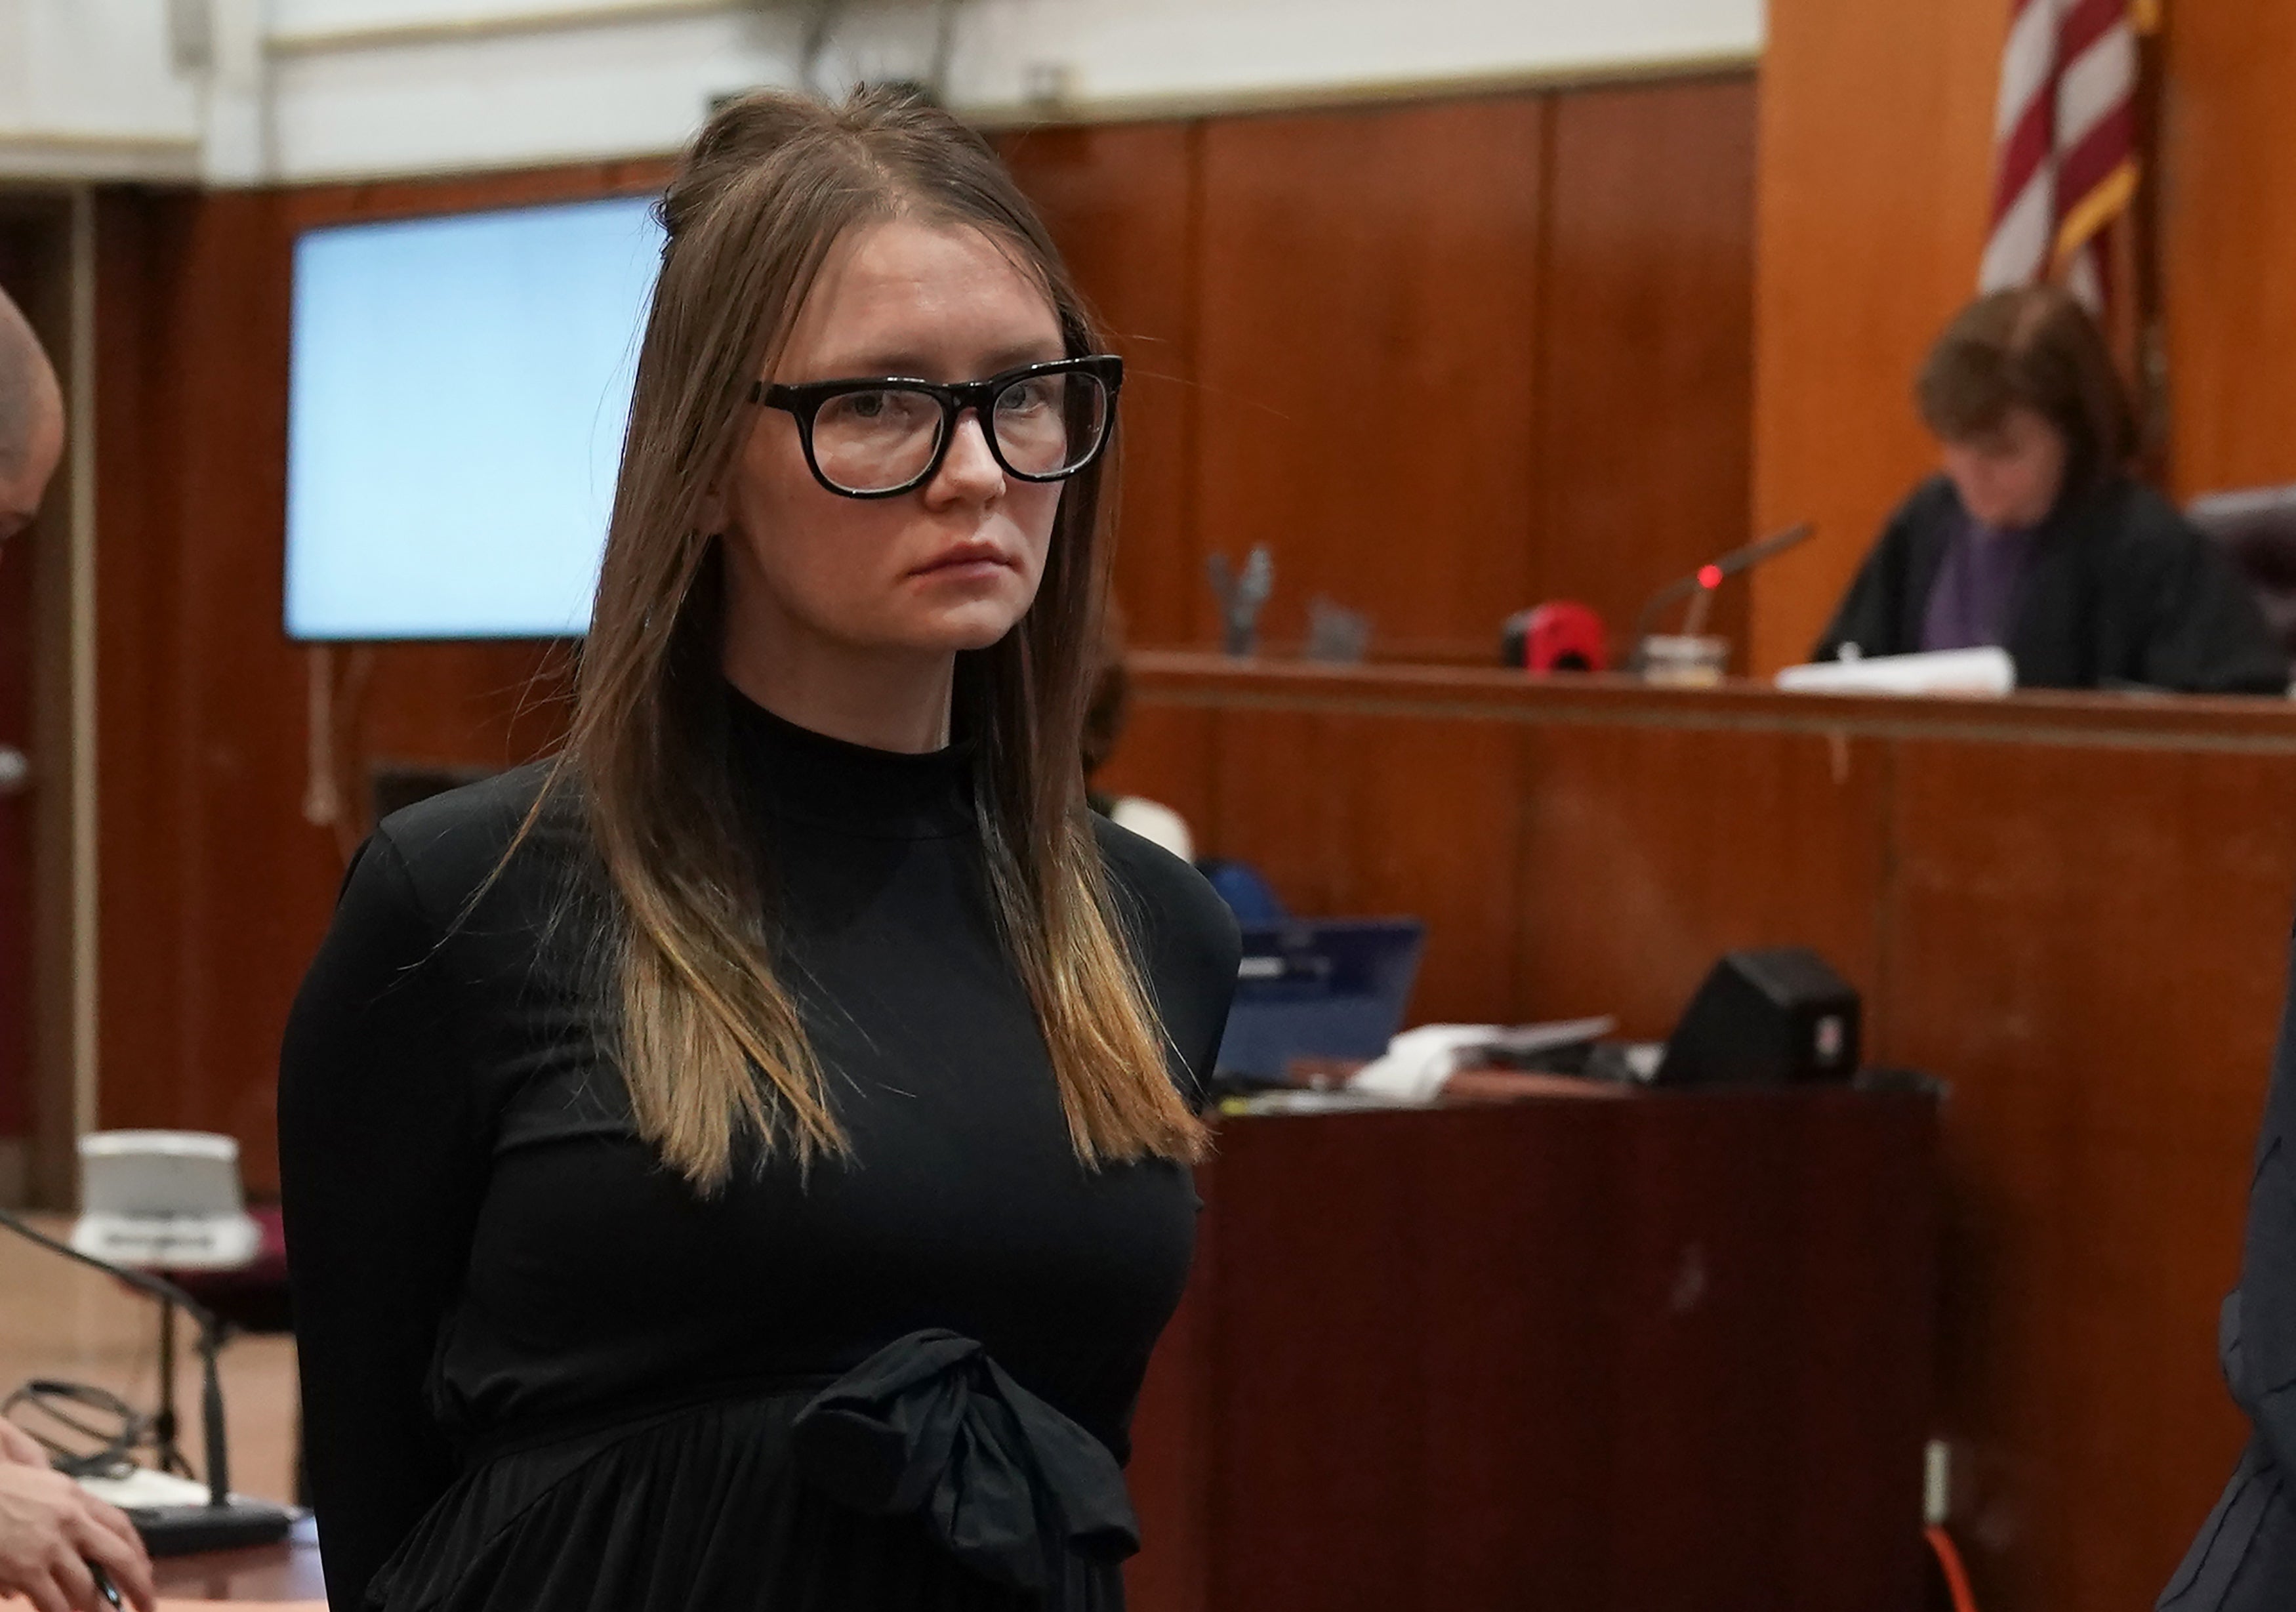 Retiran del tribunal a la falsa heredera alemana Anna Sorokin tras ser sentenciada en la Corte Suprema de Manhattan el 9 de mayo de 2019. Esto tras su arresto por cargos de hurto mayor y robo de servicios